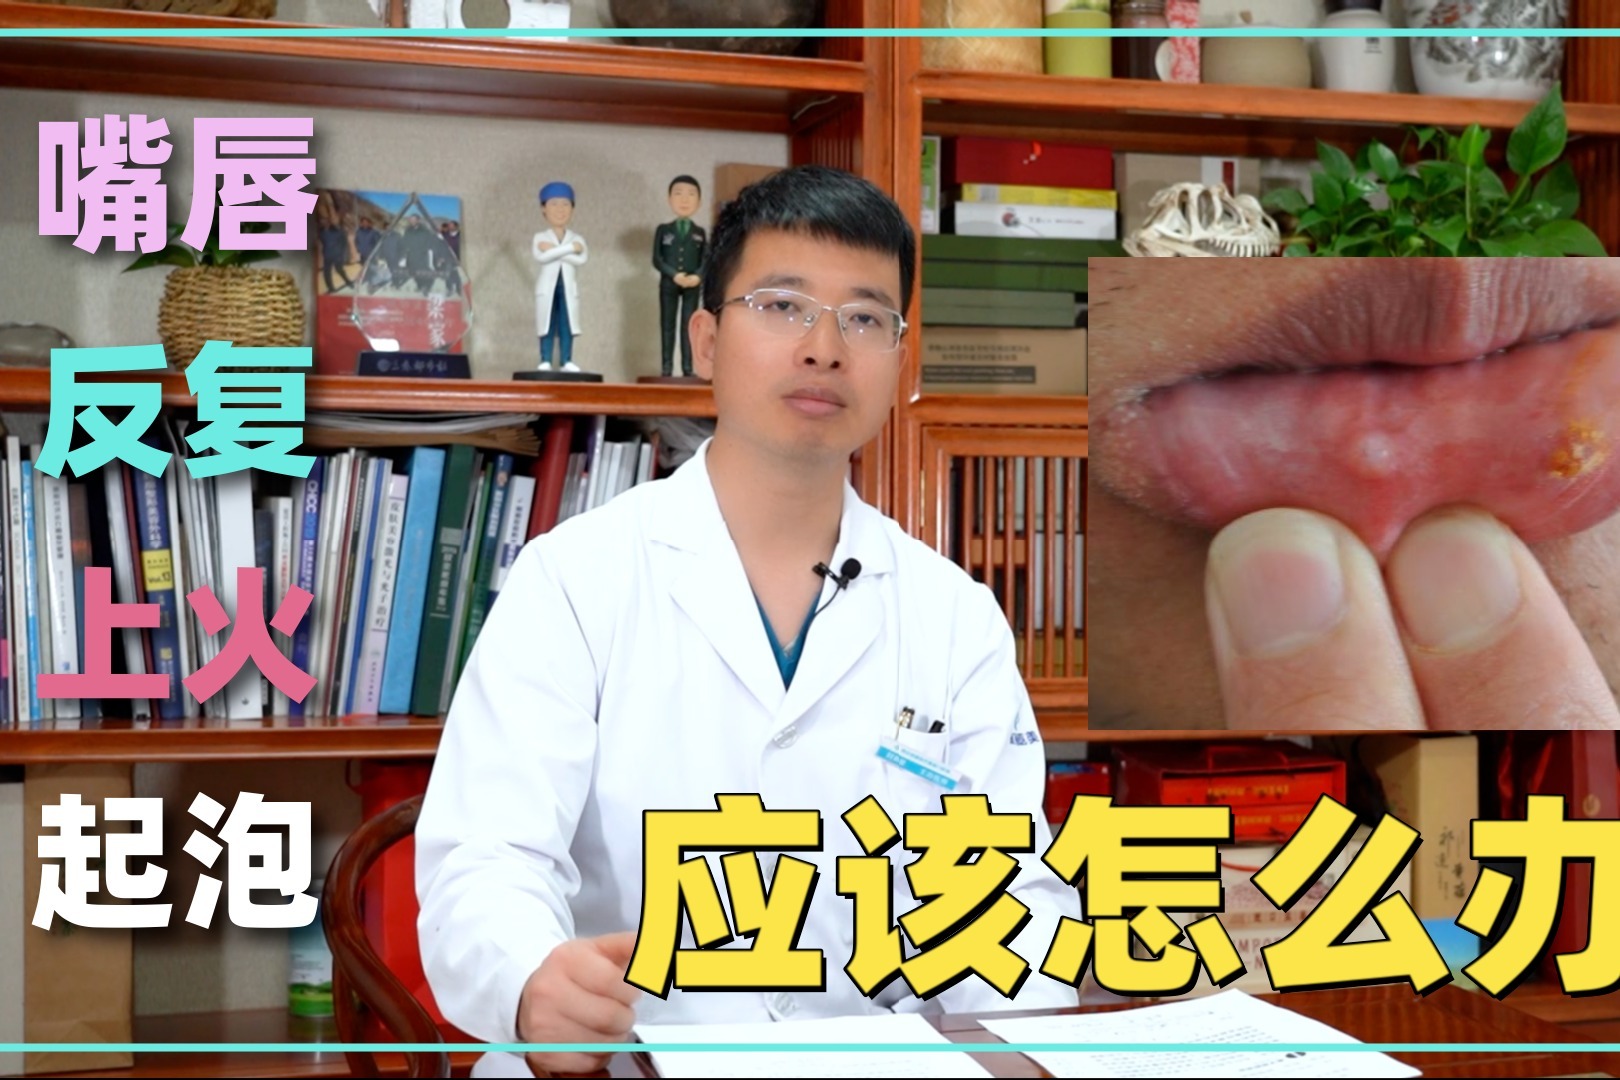 嘴破發燒… 小兒患疱疹性齒齦炎增加 | 中華日報|中華新聞雲